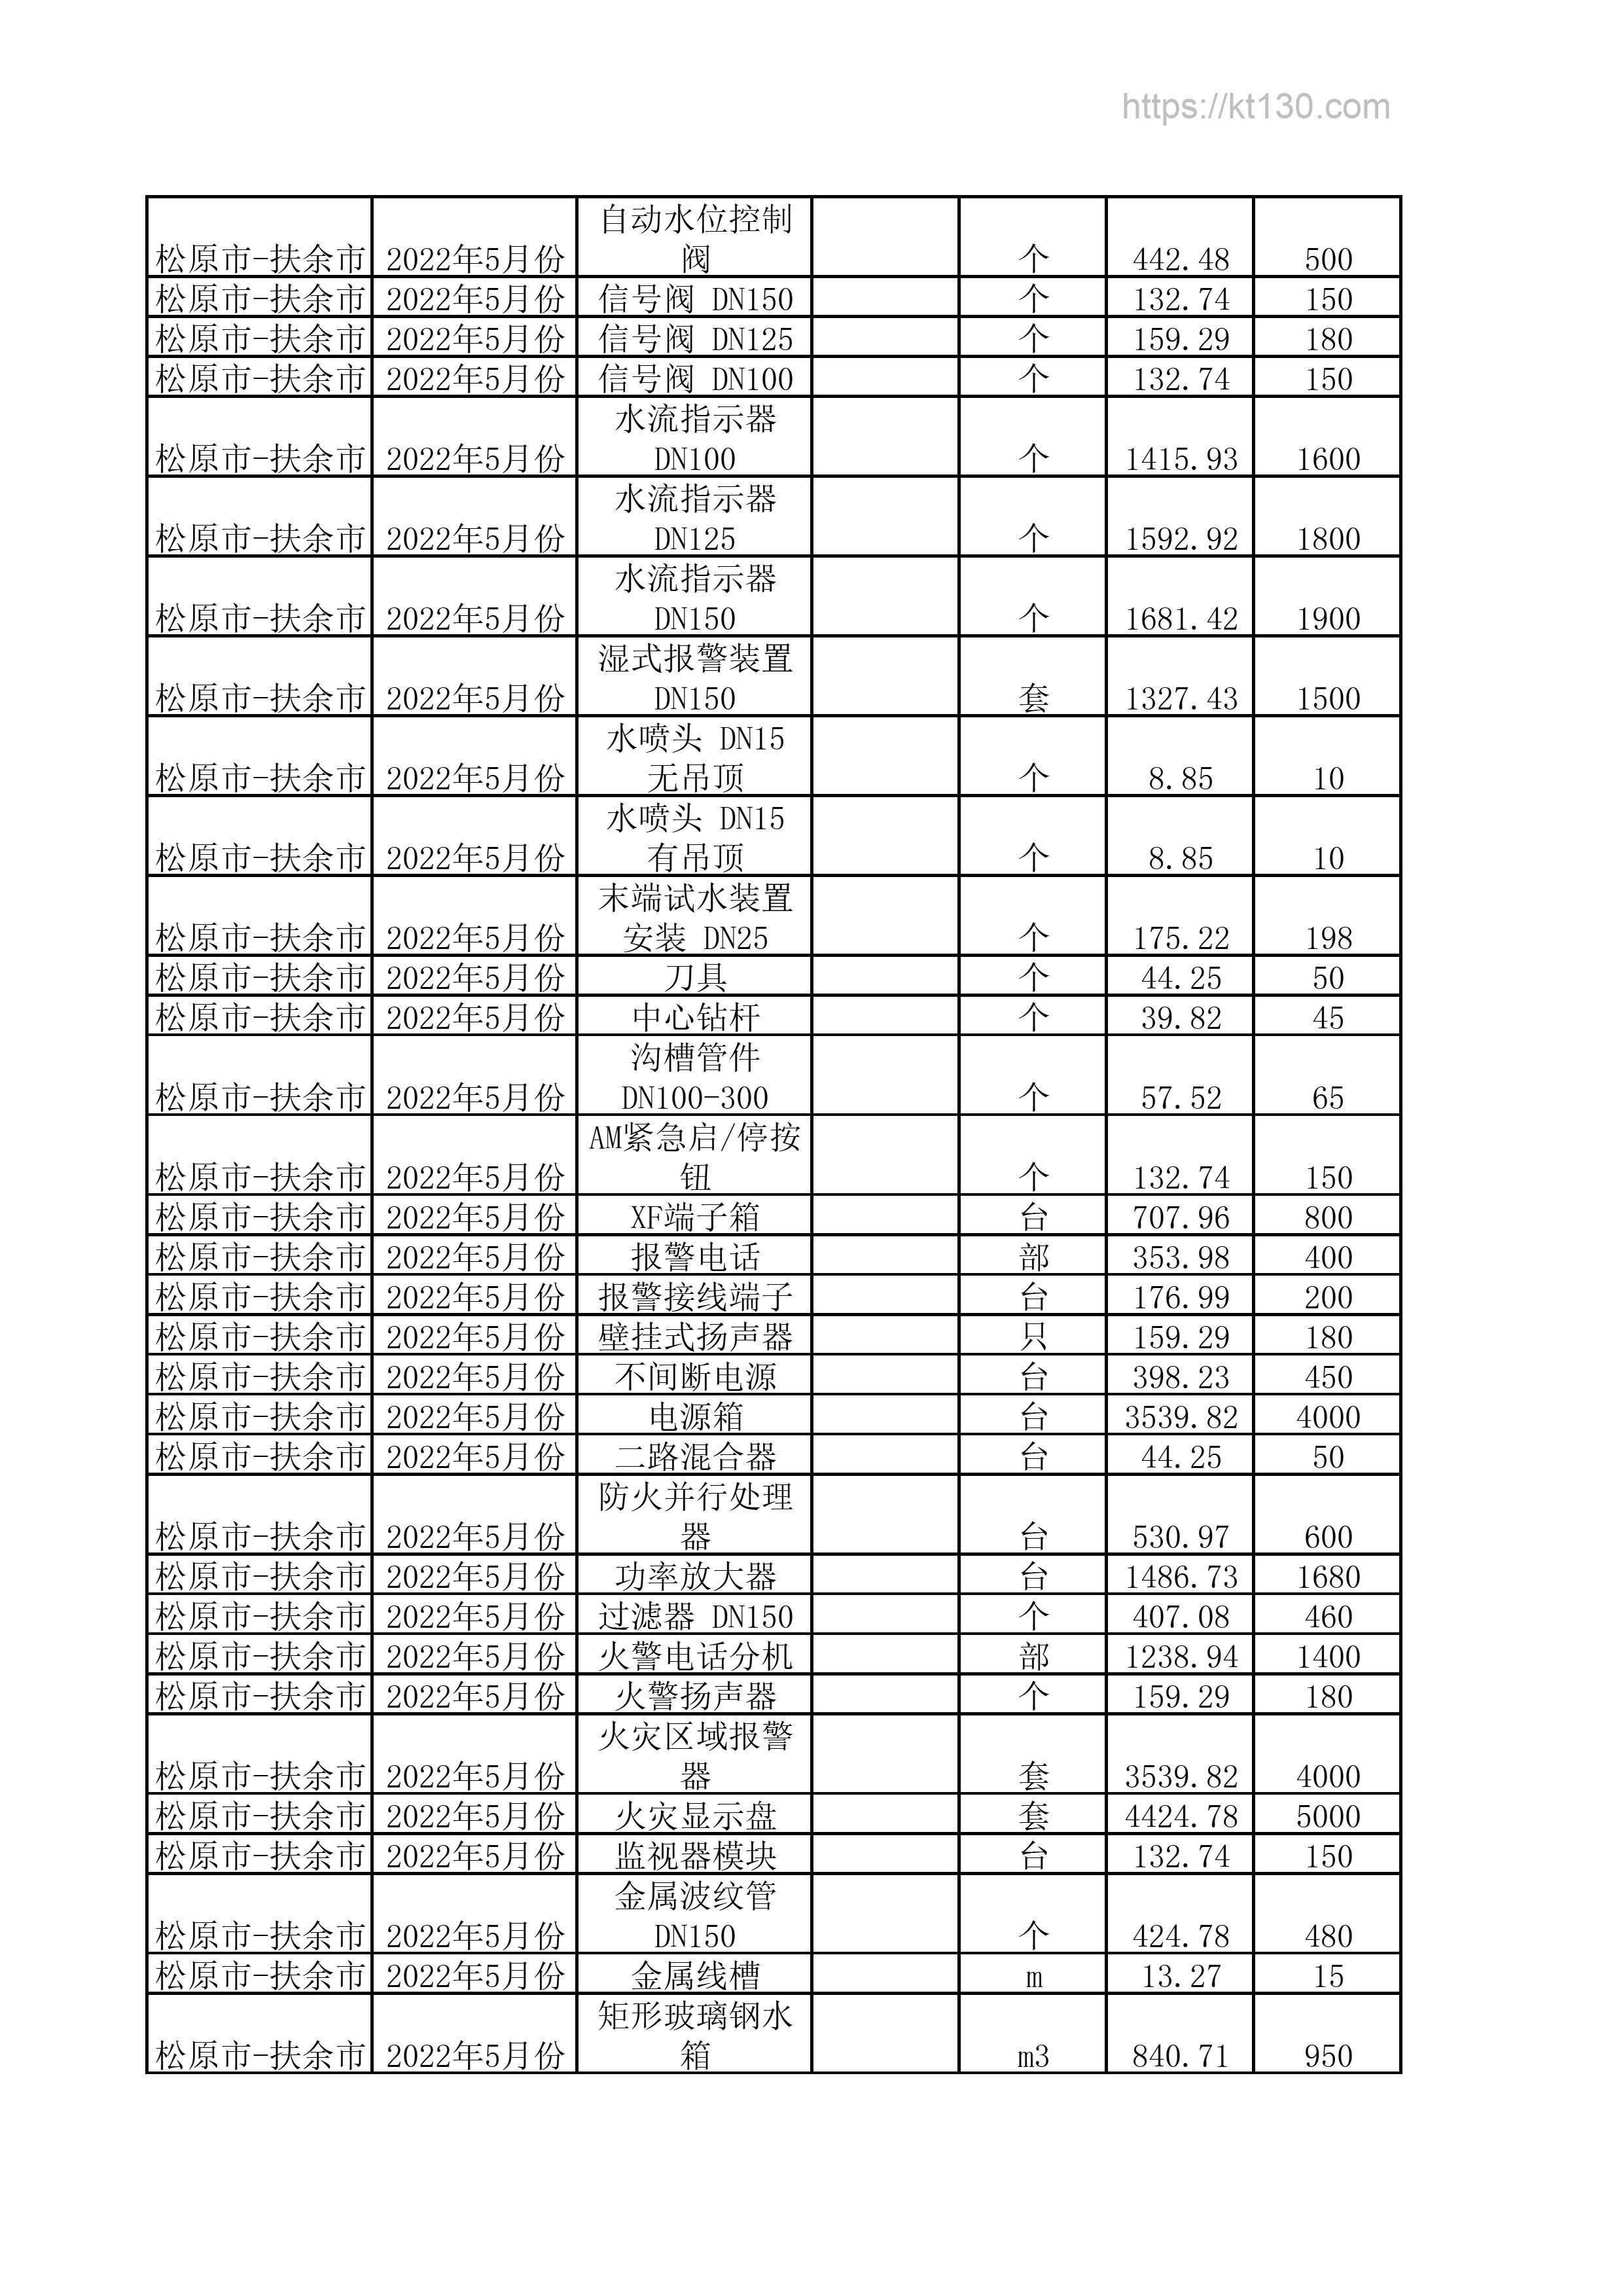 吉林省松原市2022年5月份水流指示器价格信息